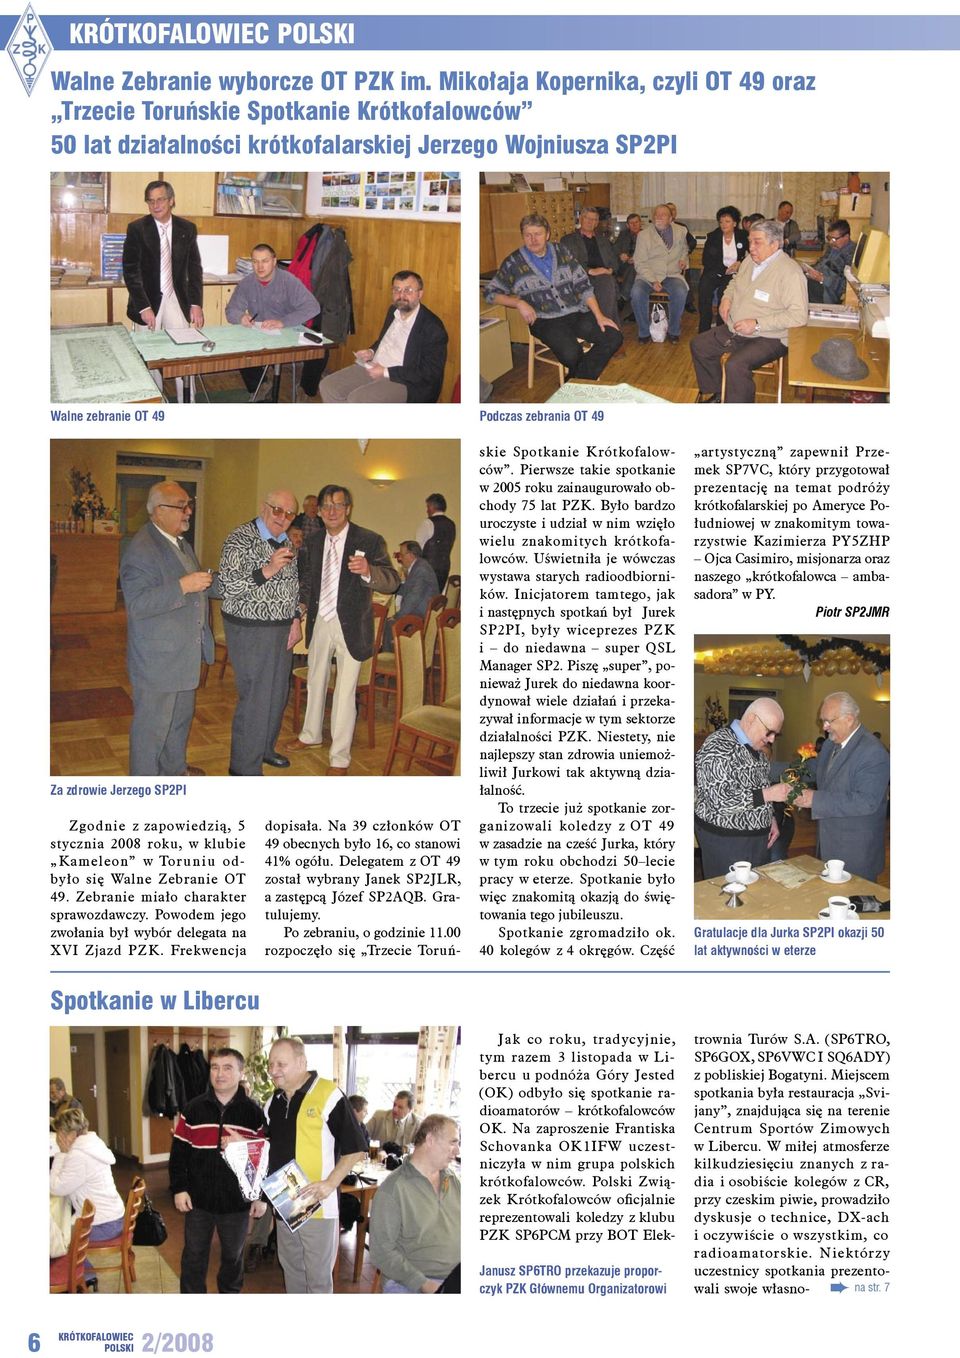 Jerzego SP2PI Zgodnie z zapowiedzią, 5 stycznia 2008 roku, w klubie Kameleon w Toruniu odbyło się Walne Zebranie OT 49. Zebranie miało charakter sprawozdawczy.